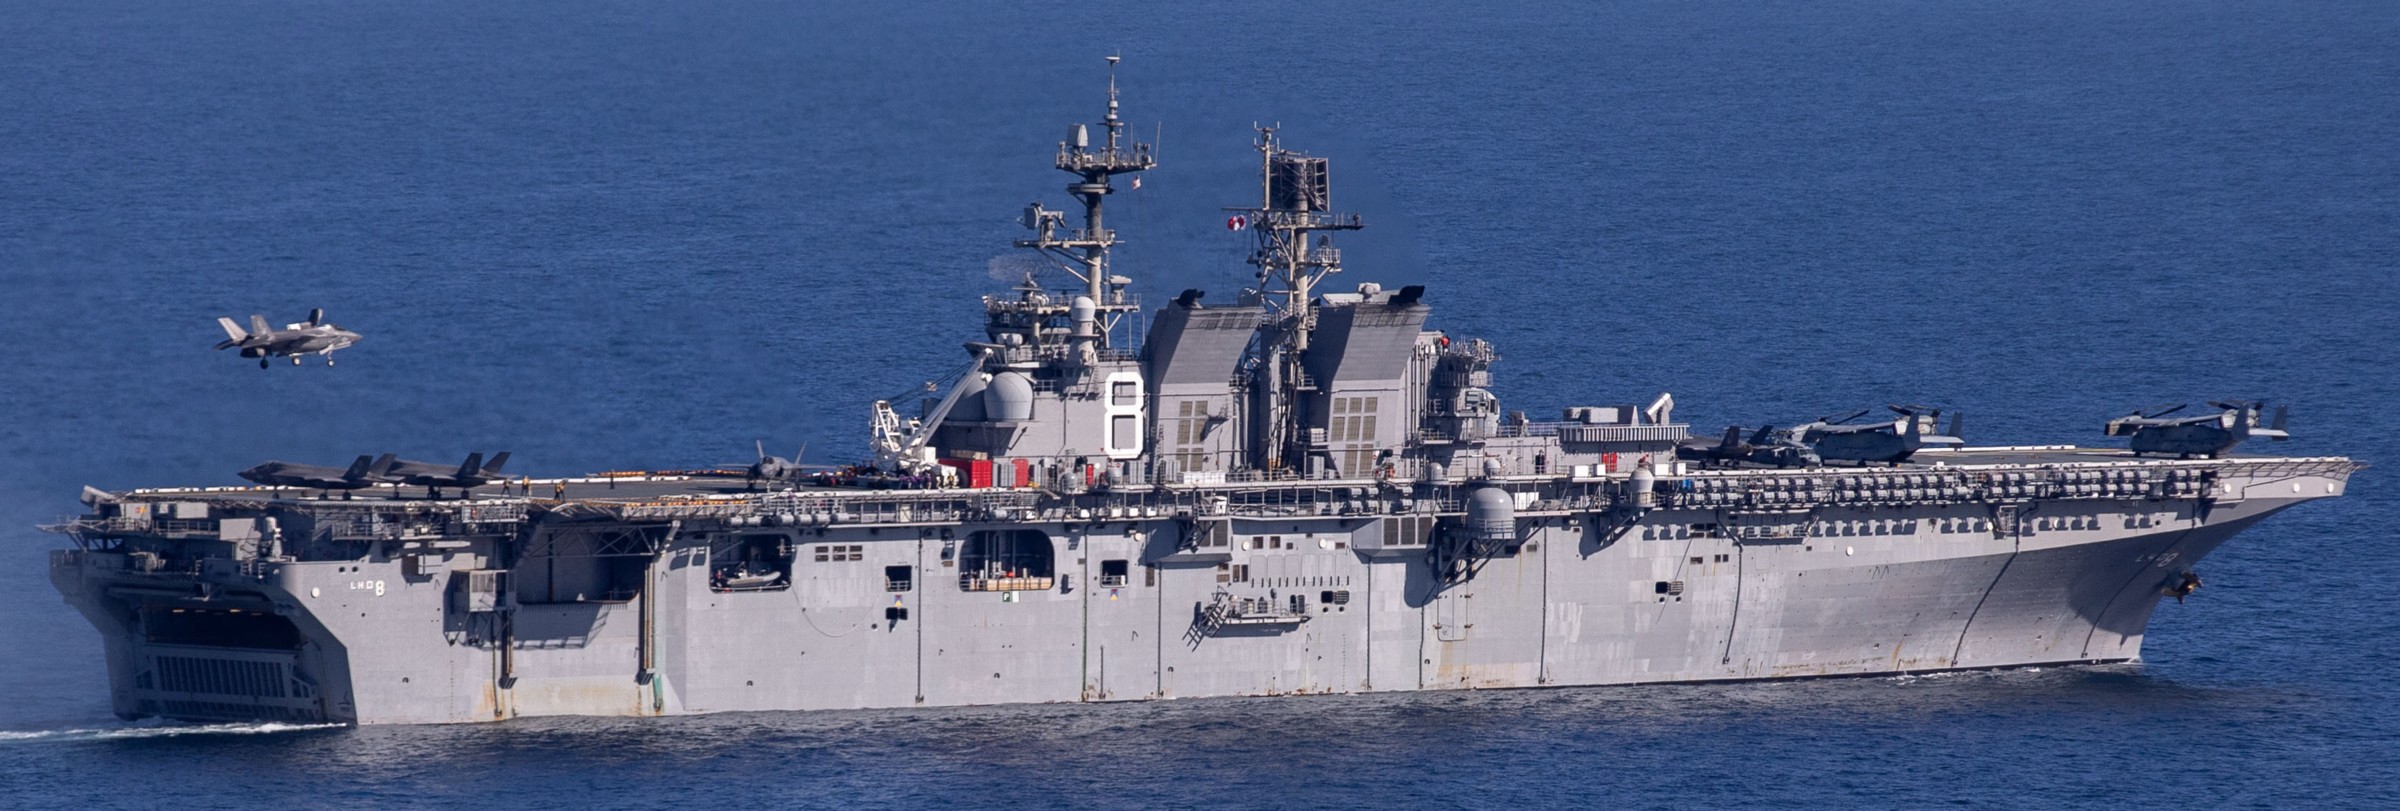 lhd-8 uss makin island amphibious assault ship landing helicopter dock us navy 157